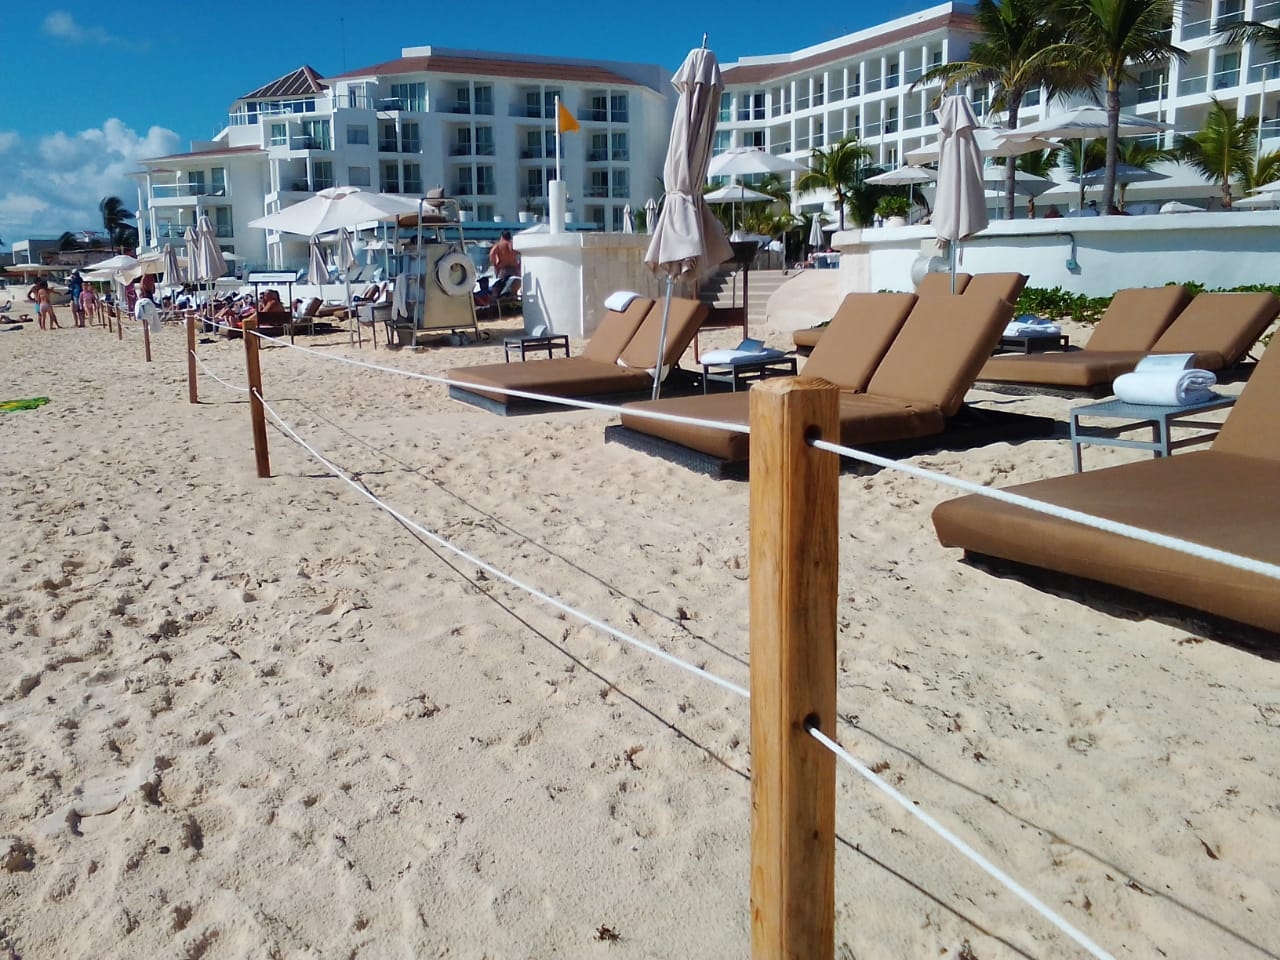 Hotel Playacar Palace bloquea acceso a arenal en Playa del Carmen